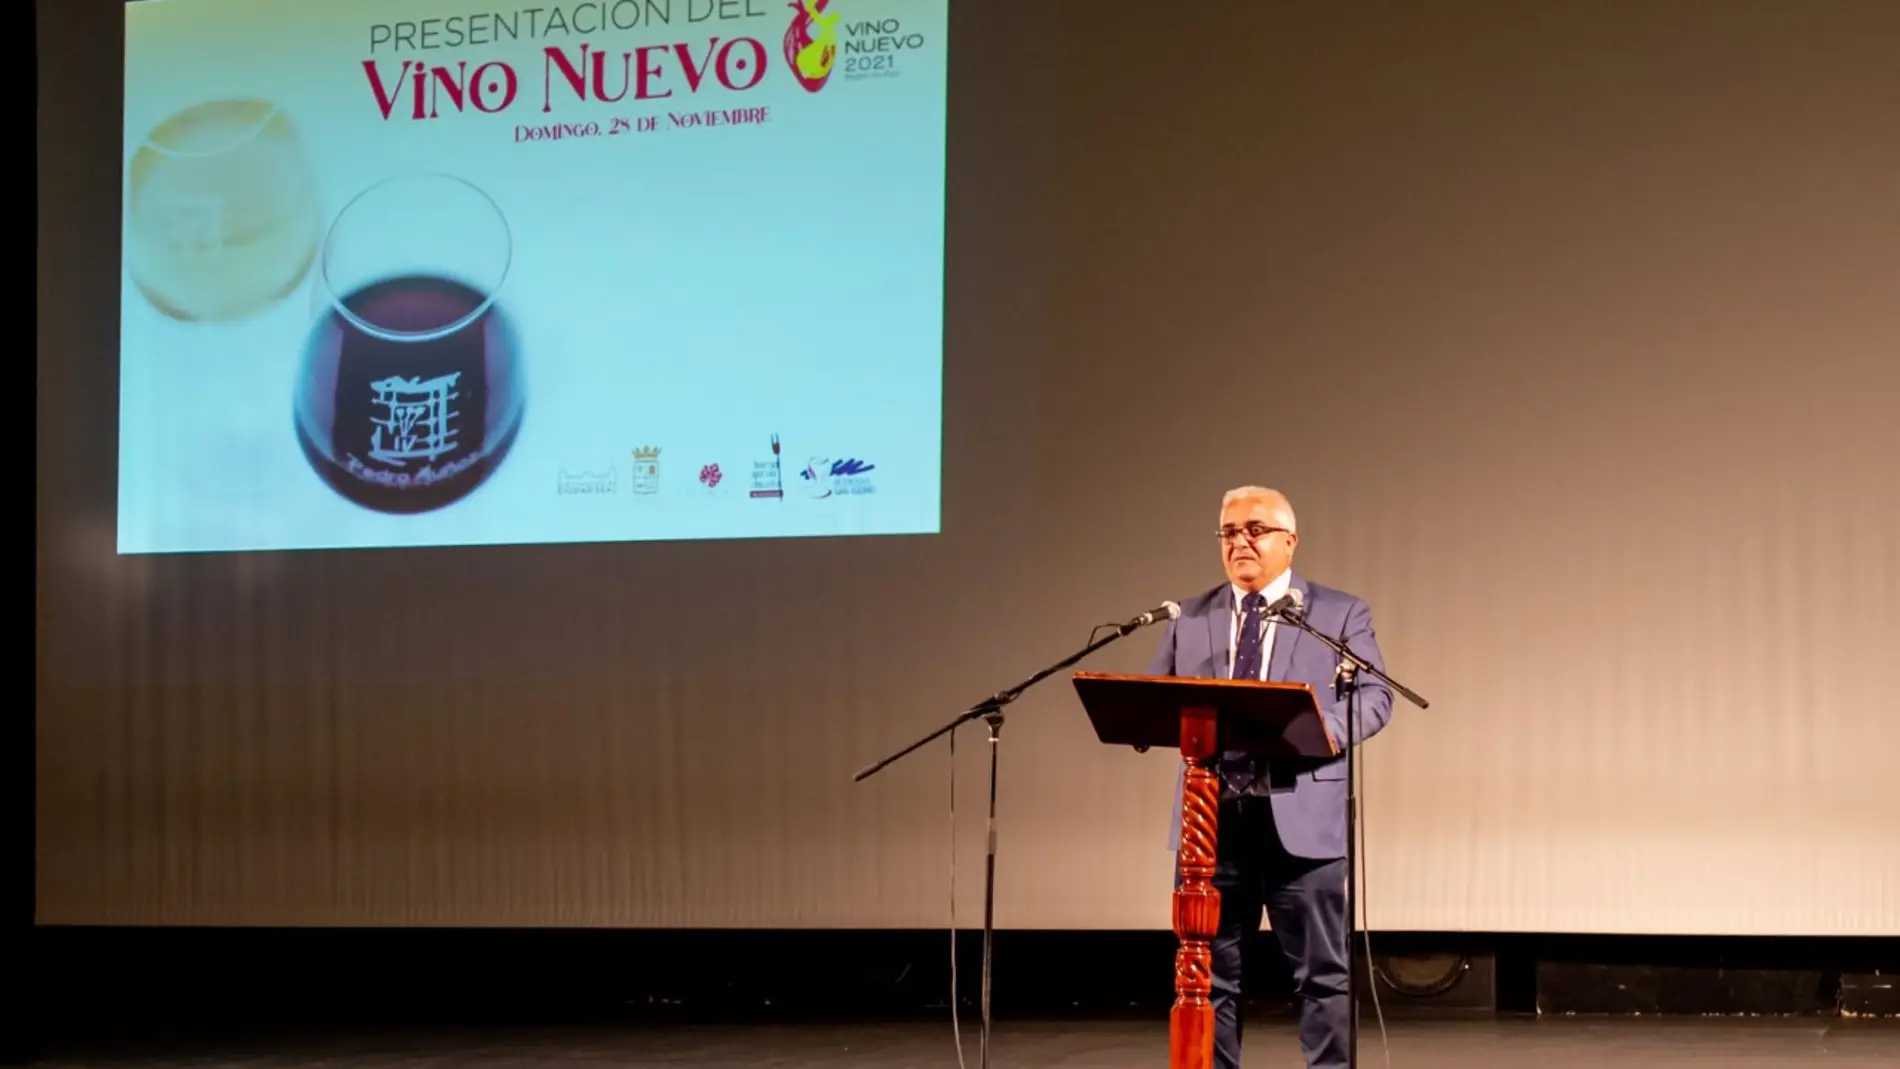 Presentación y degustación de los vinos nuevos de Pedro Muñoz